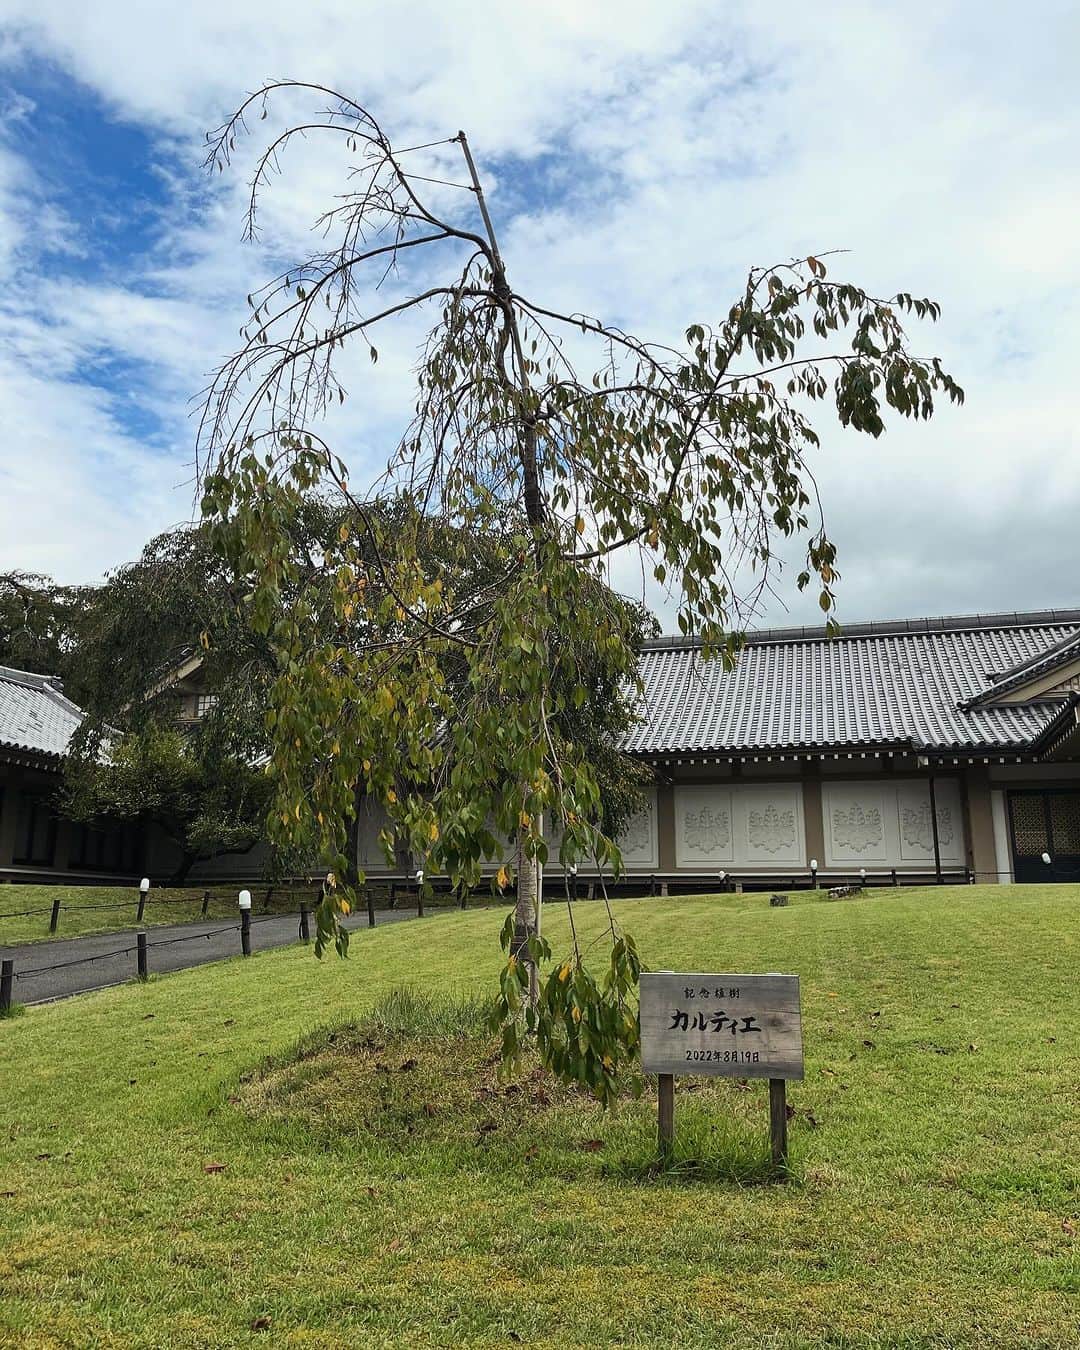 肘井美佳のインスタグラム：「Cartier tree in Kyoto.  京都は醍醐寺にあったカルティエの桜の木。  #cartier #kyoto #ハーフタイムツアーズロケ #京都旅 #醍醐寺 #何本かあるようです #桜もいいね  #今年が終わってしまうので京都の写真どんどん出します #ハーフタイムツアーズ公式YouTubeで配信中」